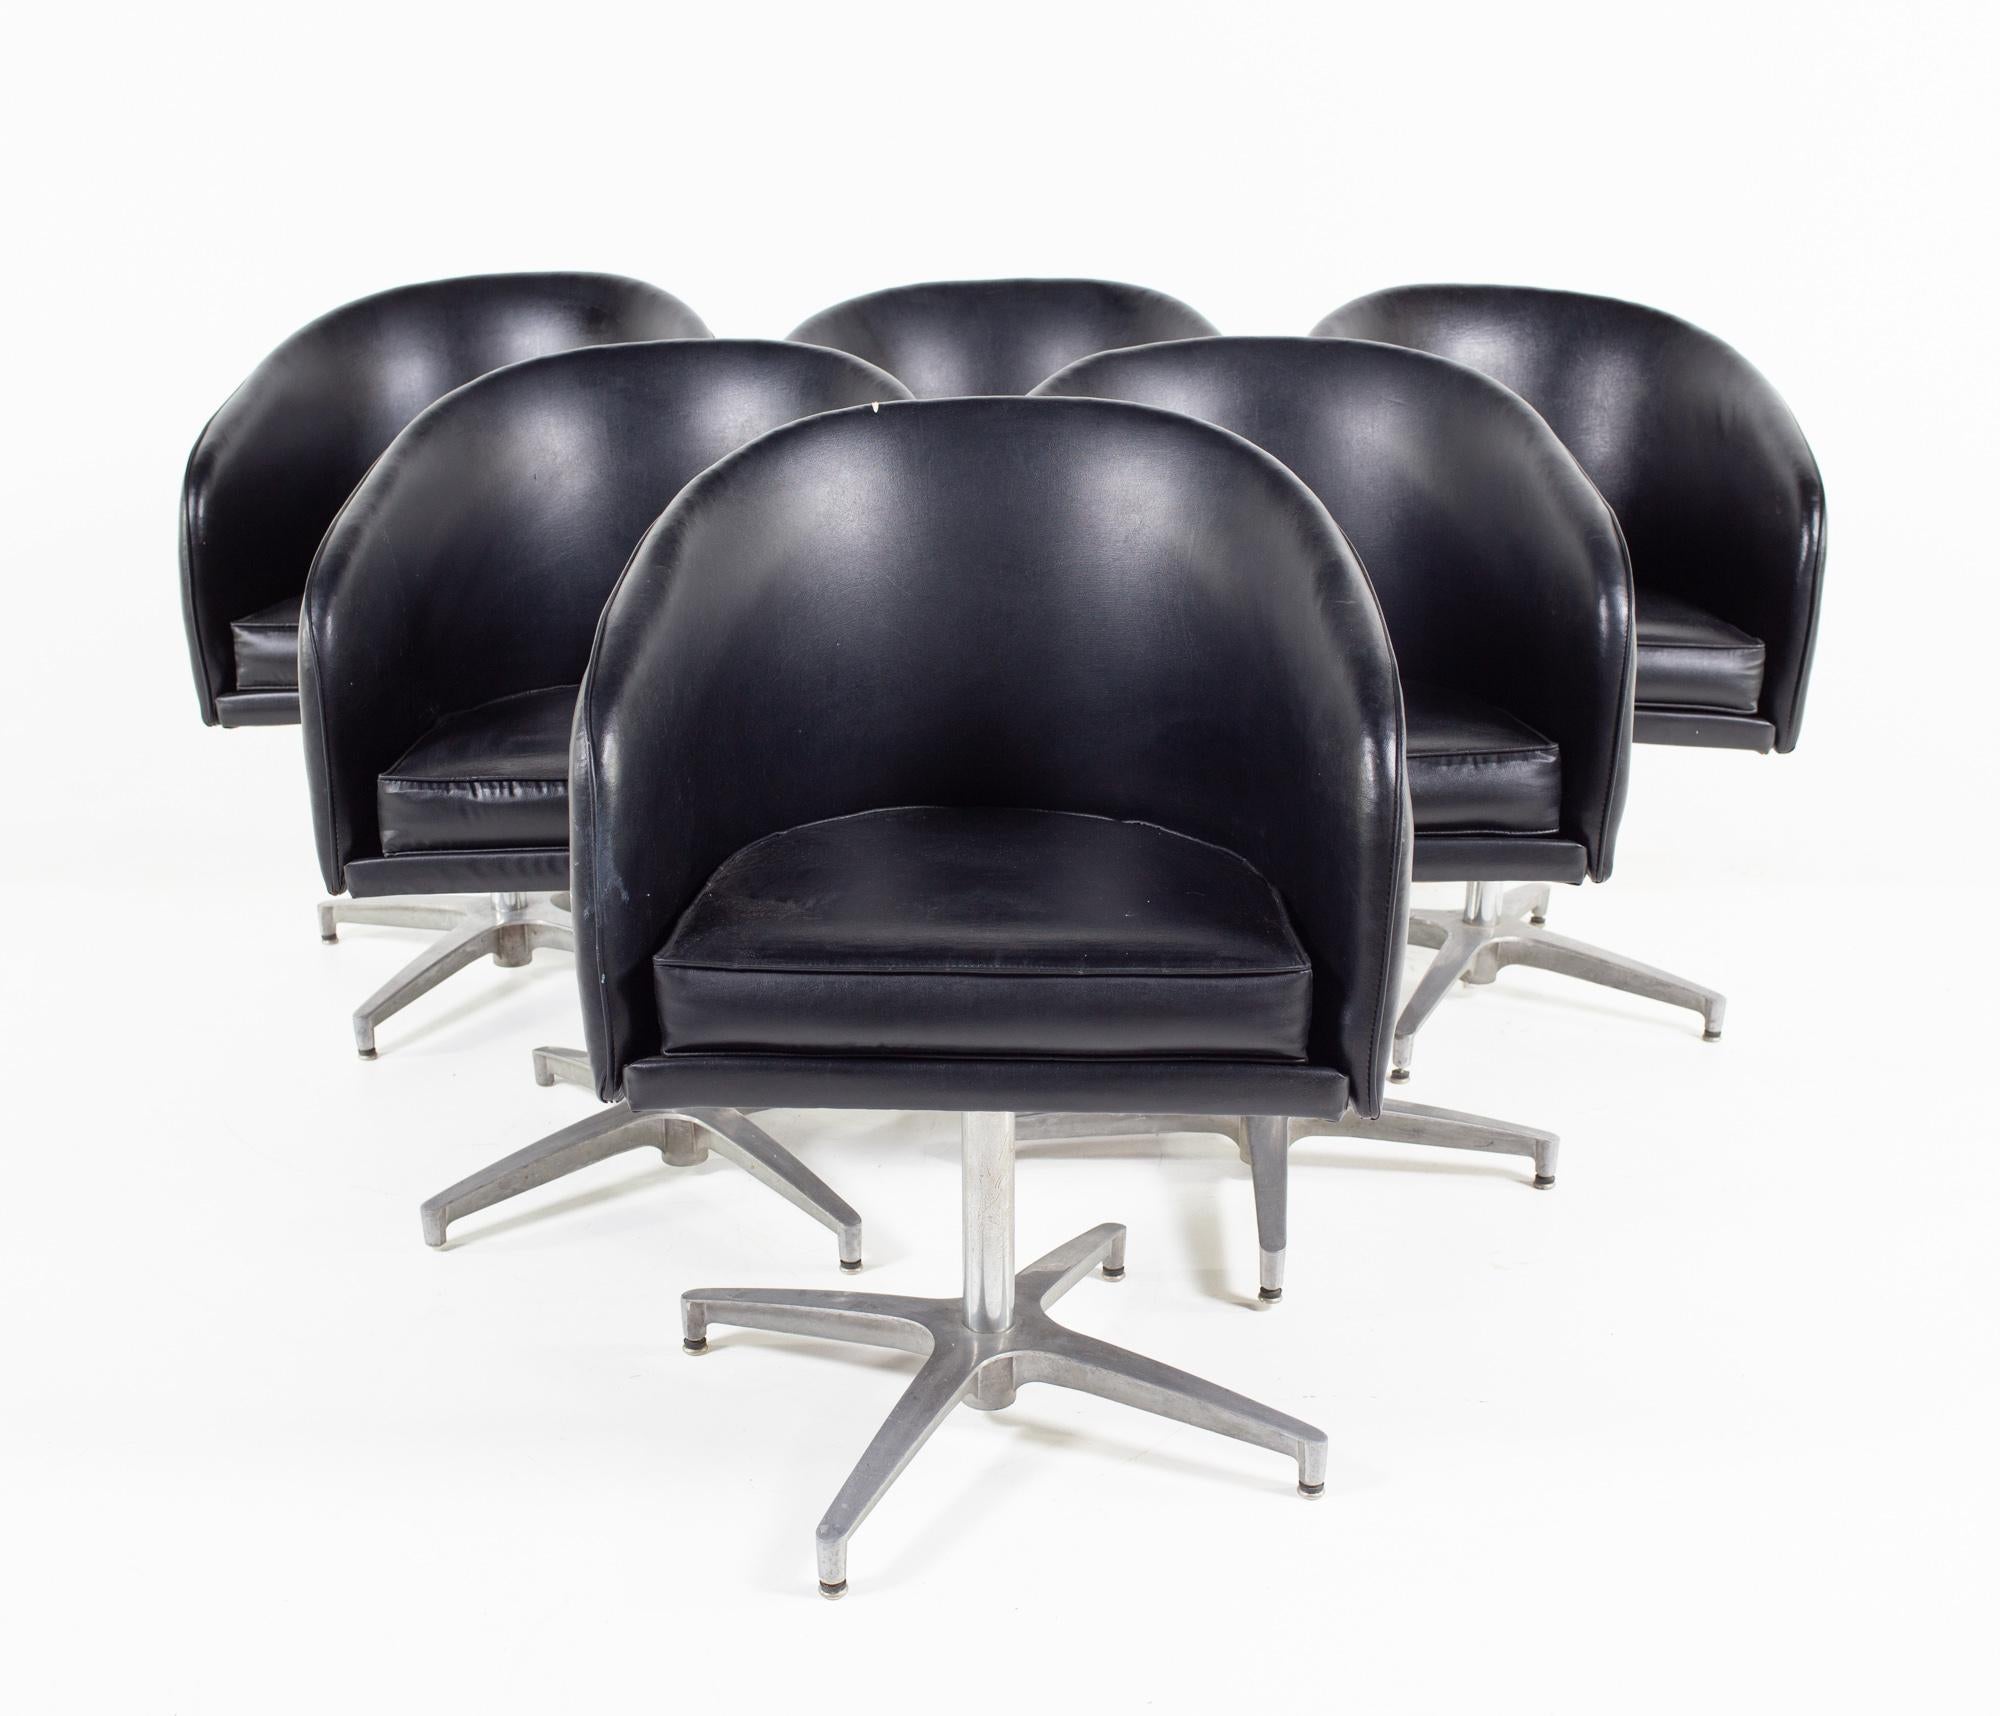 Chaise de salon d'appoint en vinyle noir de style Overman, milieu du siècle, jeu de 6

Chaque chaise mesure : largeur 24 x profondeur 22,5 x hauteur 33 pouces, avec une hauteur d'assise de 20 pouces

Tous les meubles peuvent être obtenus dans ce